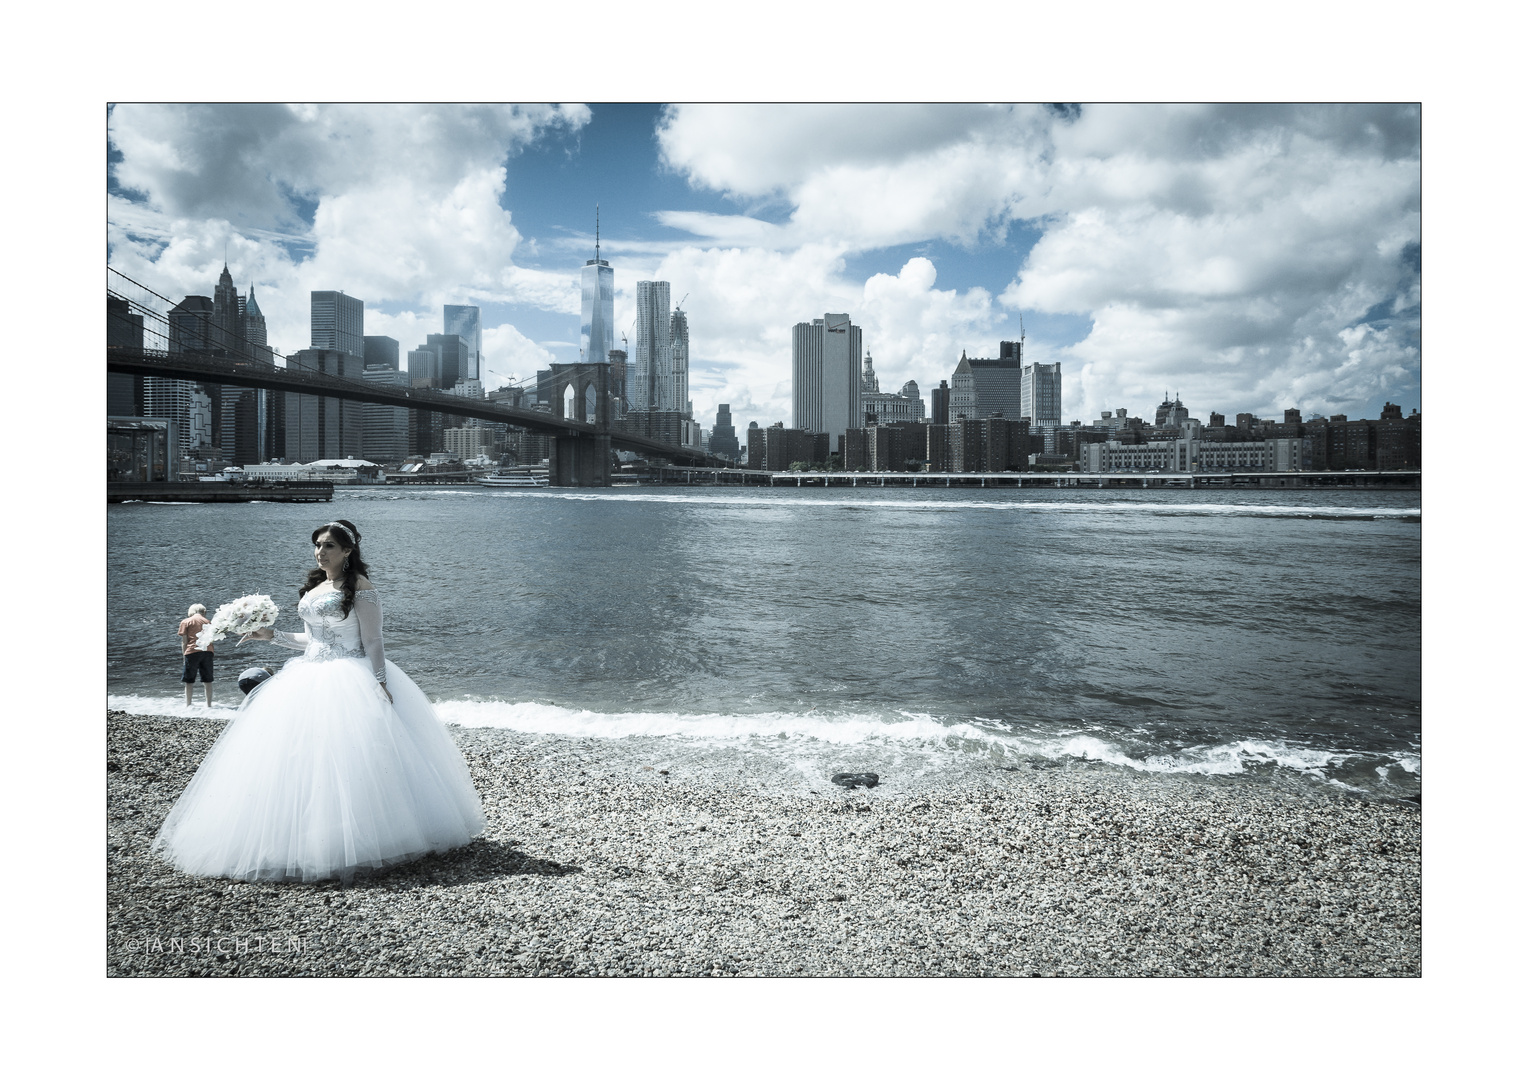 [NYC_001_the bride]